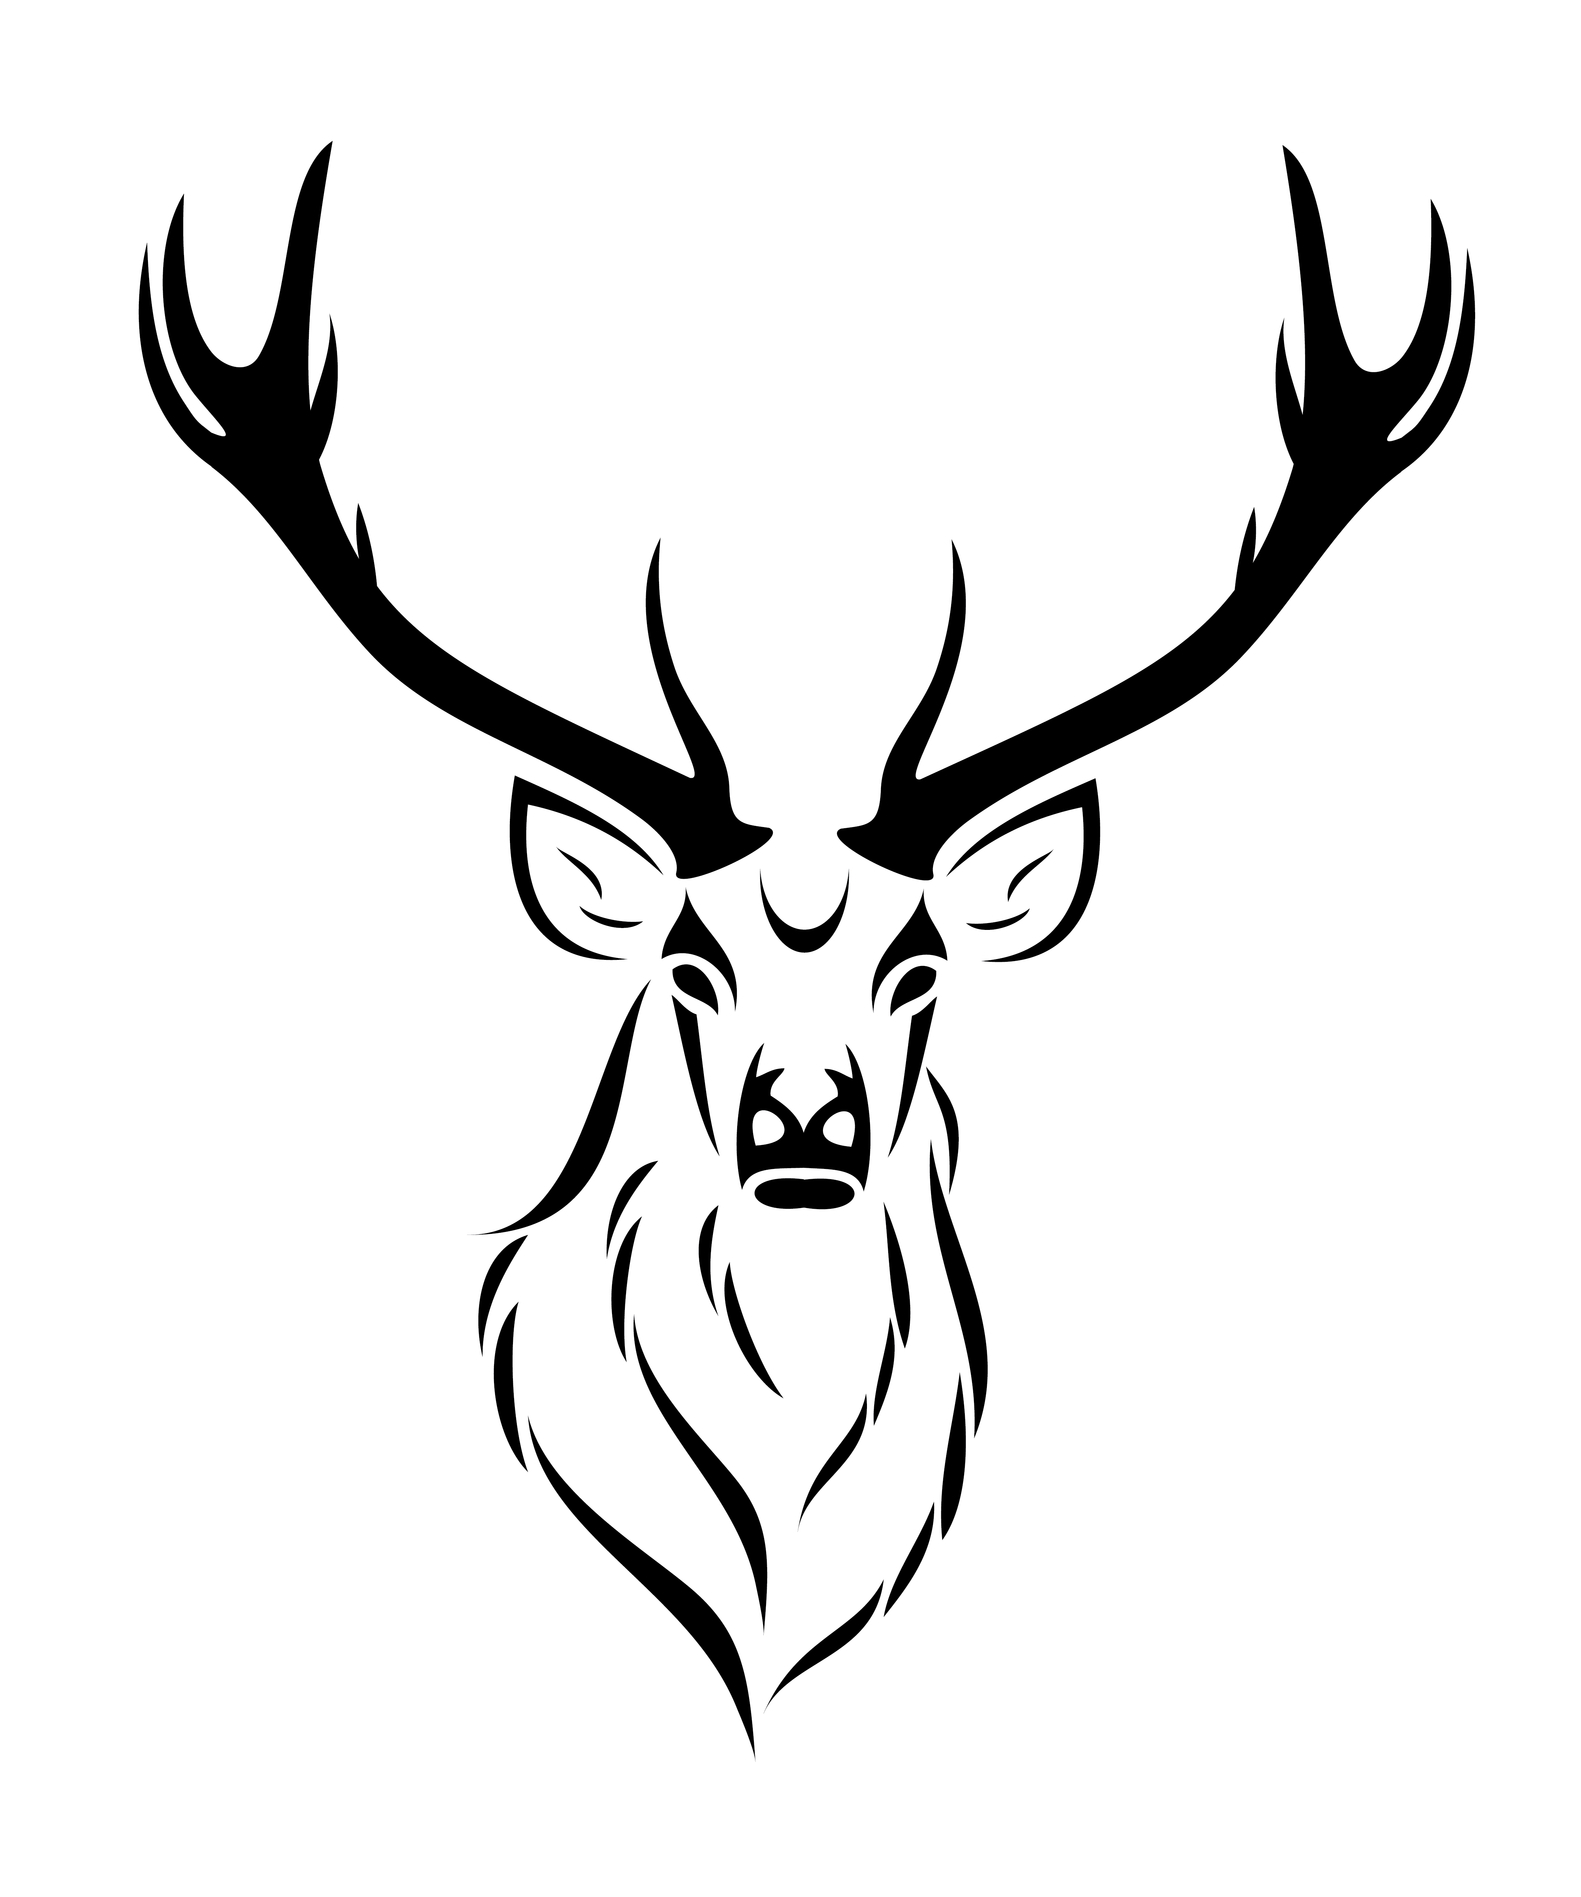 Deer Tattoo on Ankle - Cute Animal Tattoo Design